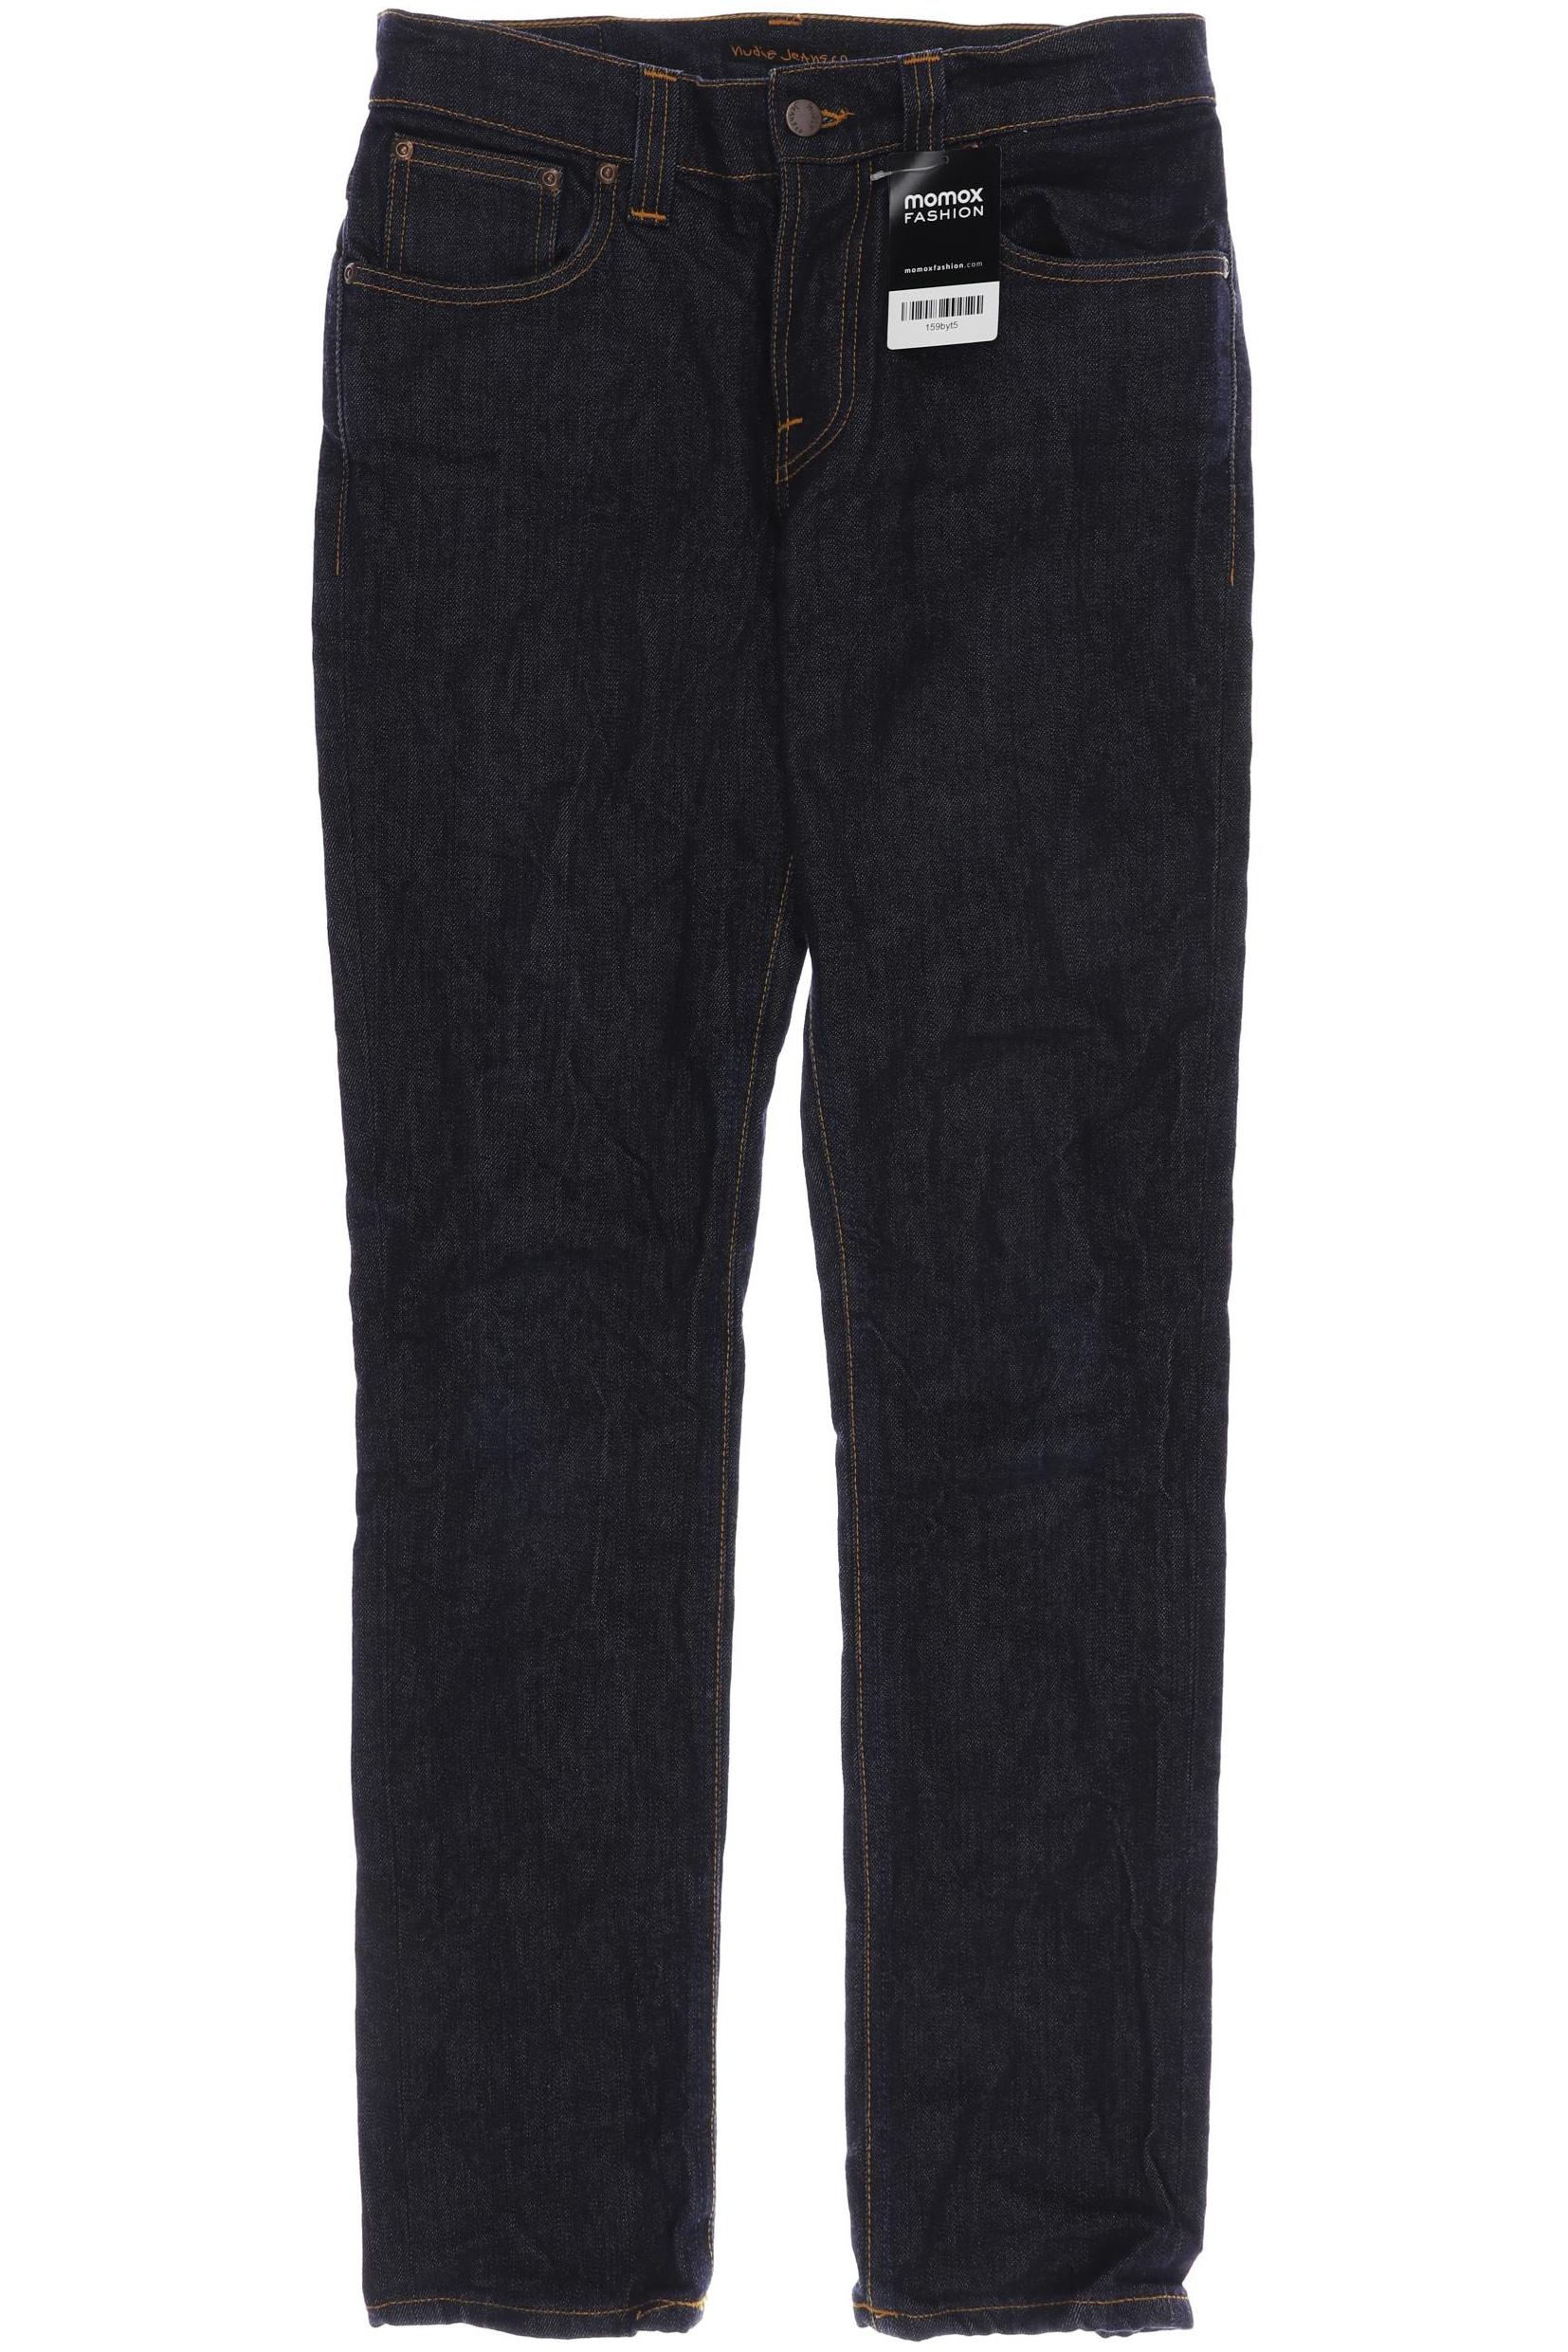 Nudie Jeans Herren Jeans, marineblau von Nudie Jeans